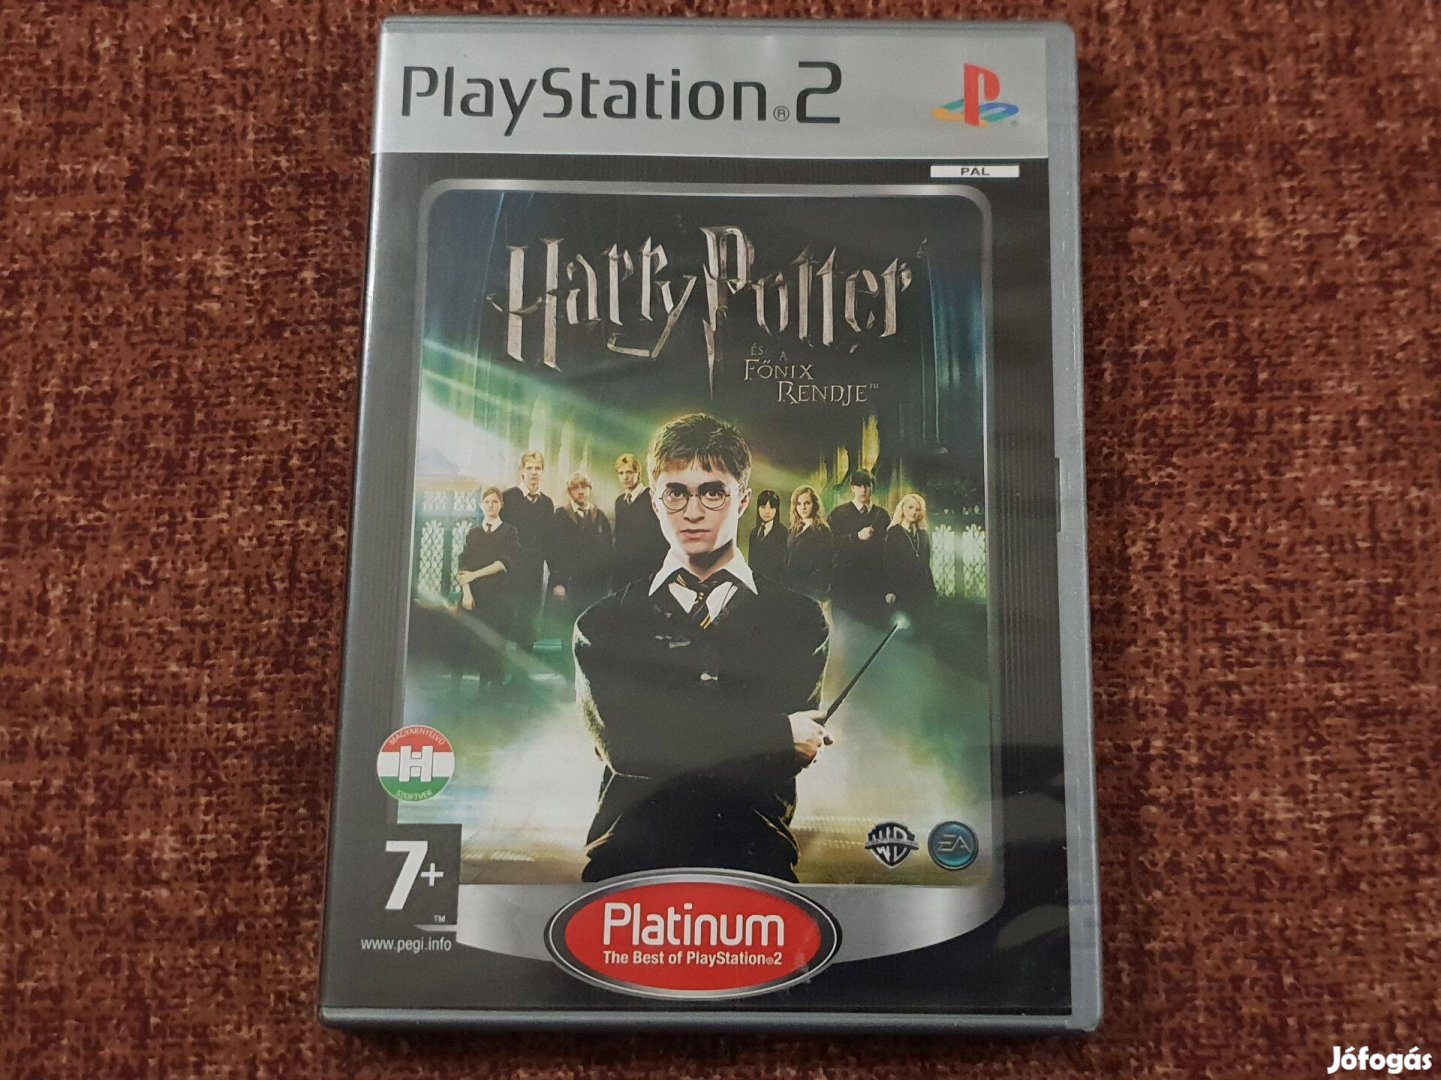 Harry Potter és a Főnix Rendje Playstation 2 eredeti lemez ( 8000 Ft )